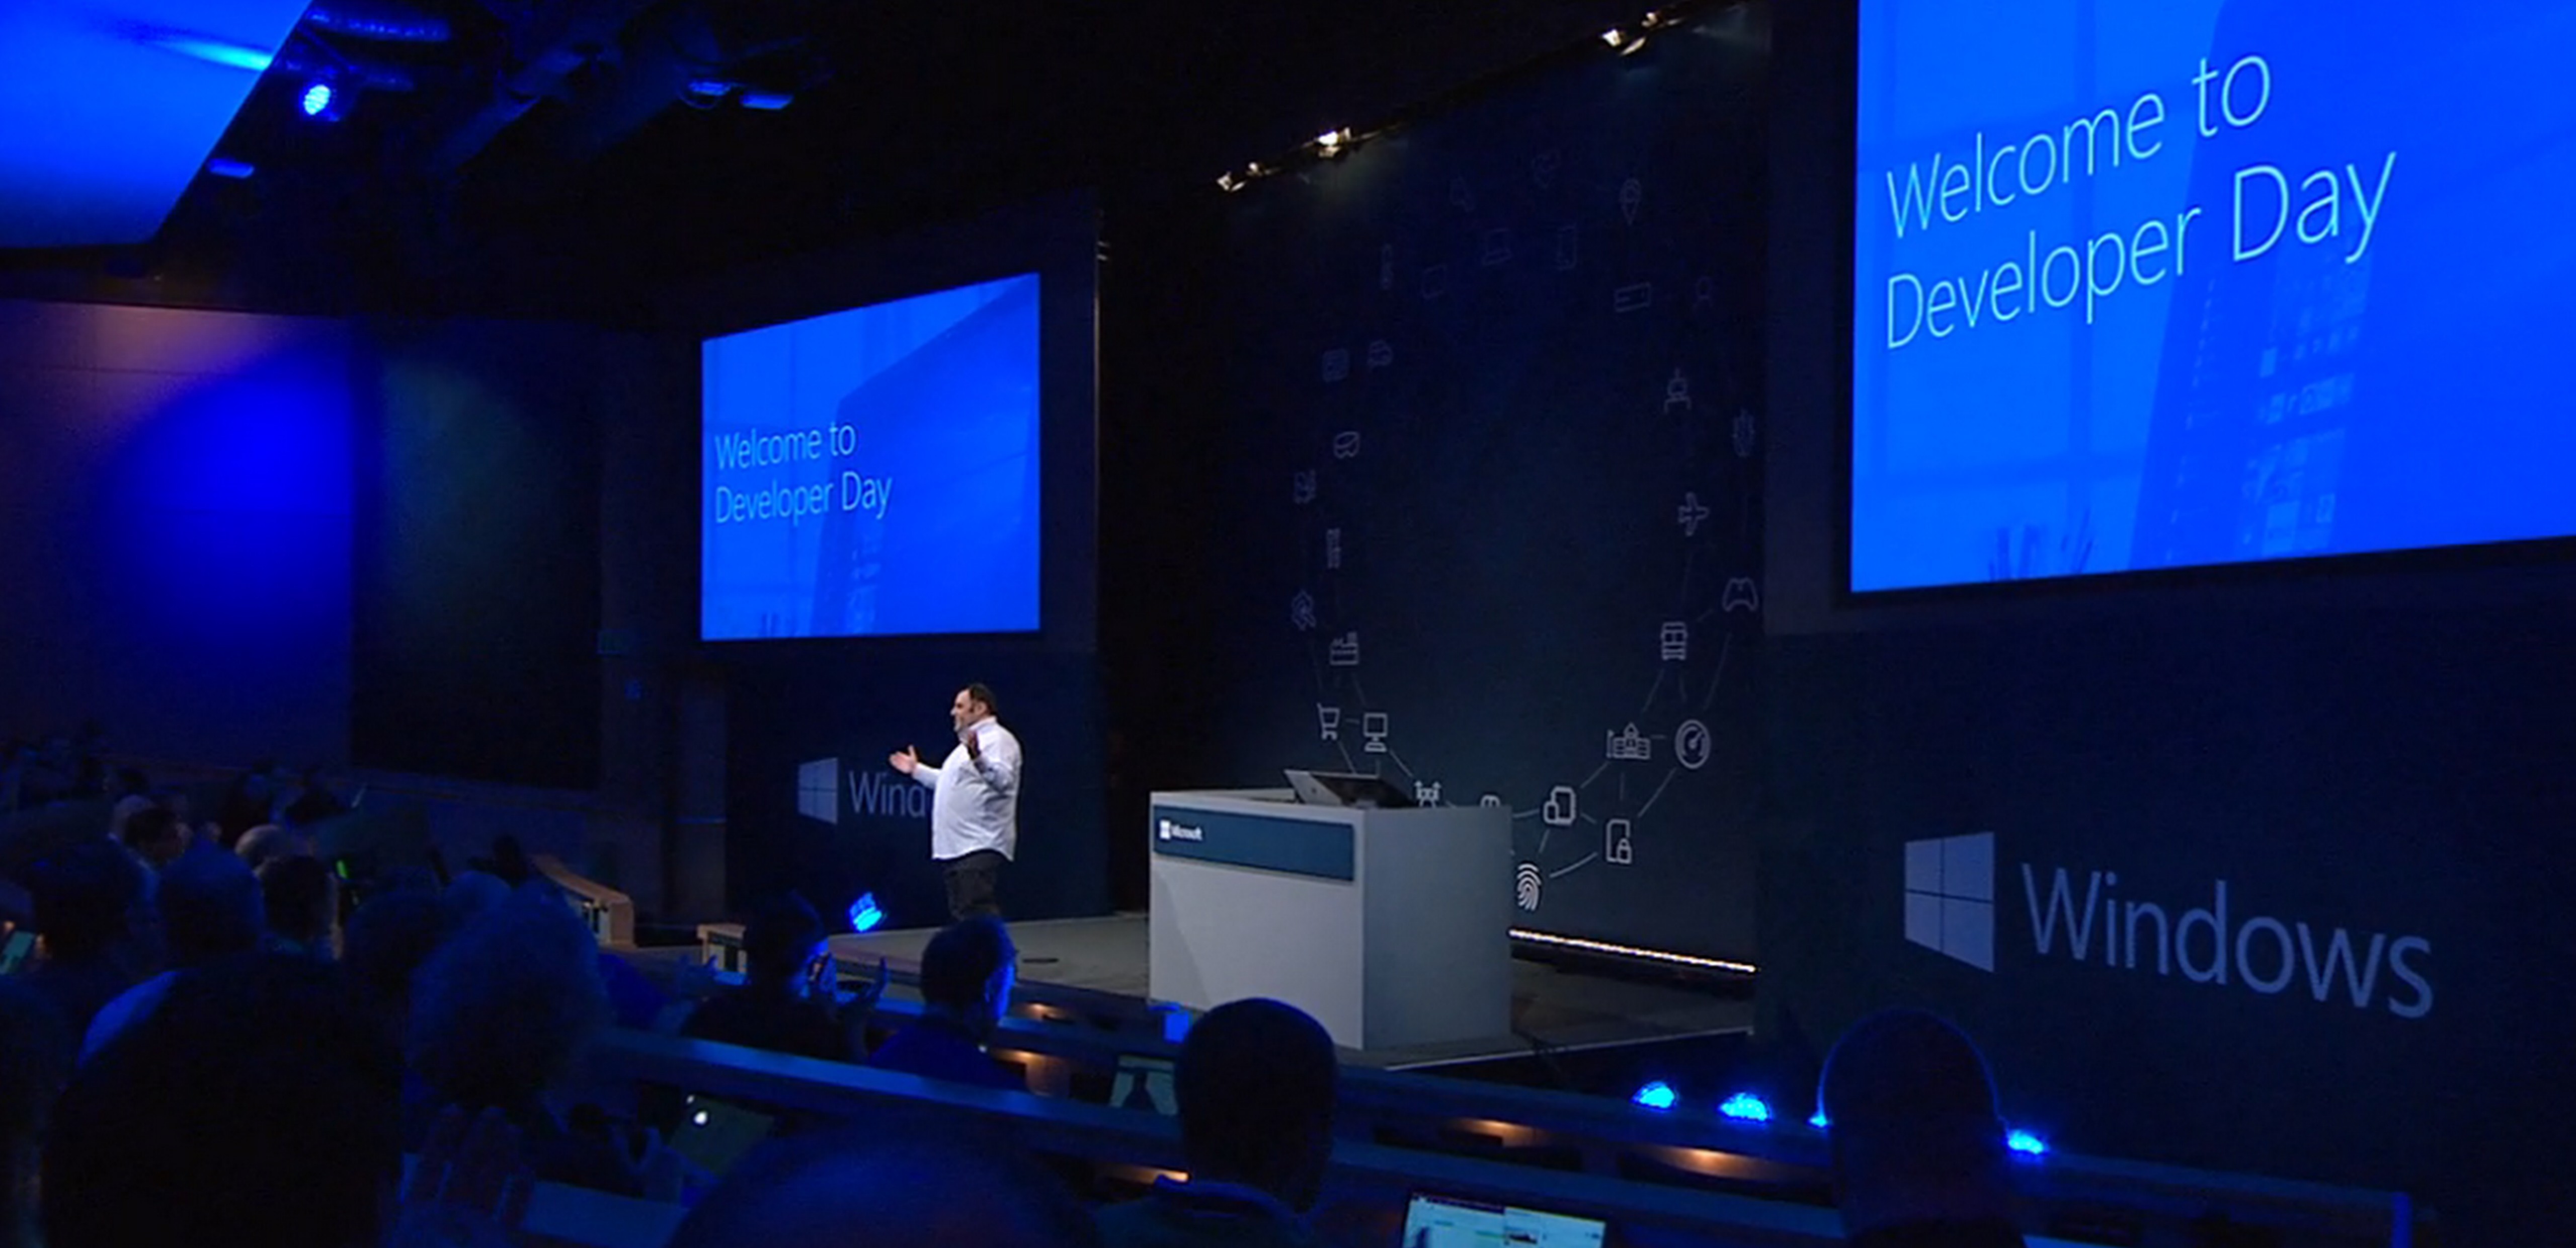 Kevin Gallo CVP of developer platform at Microsoft standing on stage delivering a keynote.